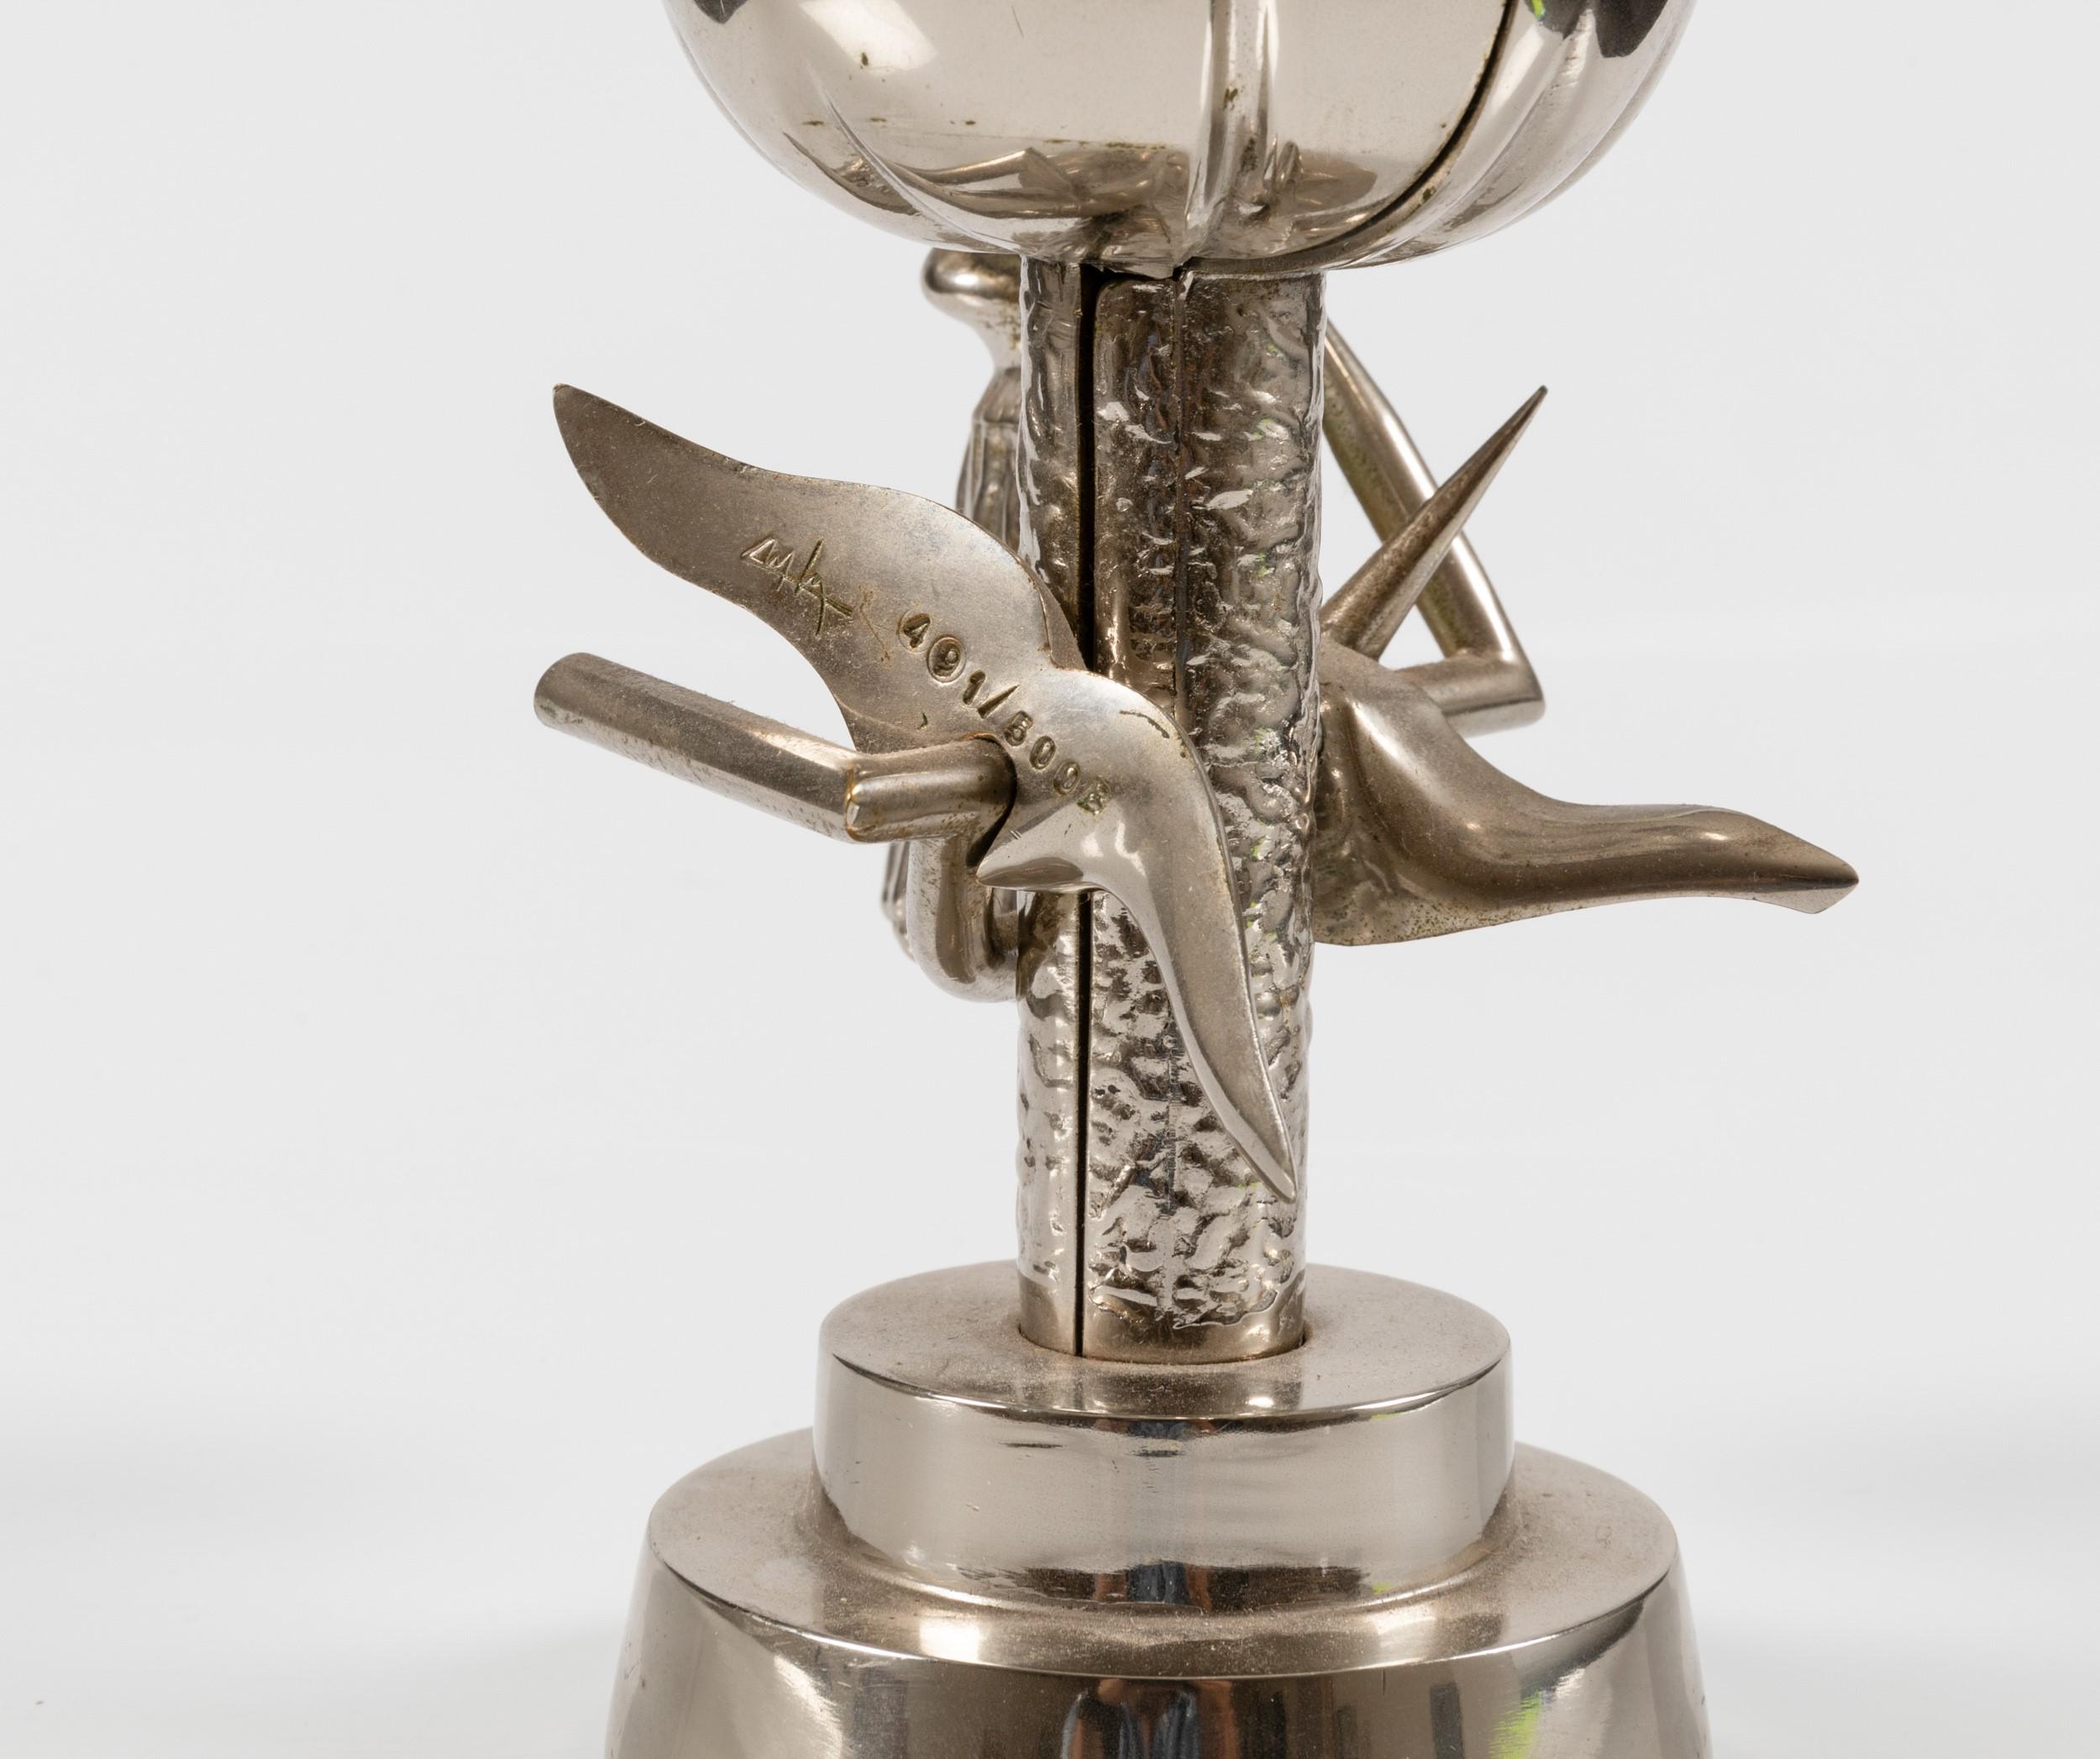 Wifredo Lam -  L’Oiseau de feu - nickel brass sculpture limited edition of 500  1